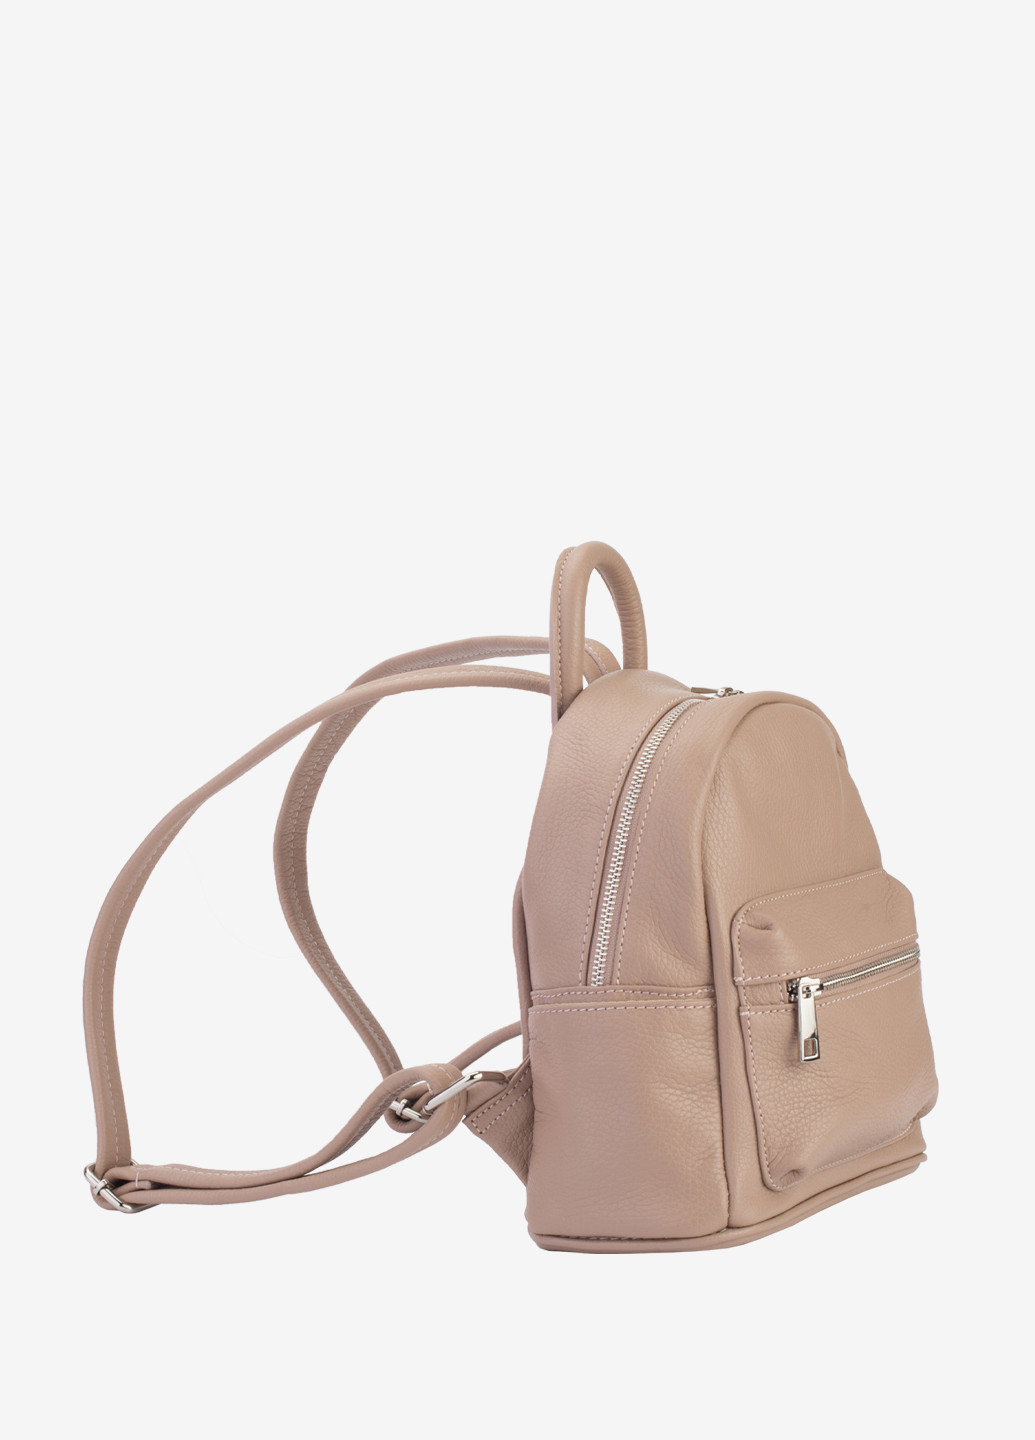 Рюкзак женский кожаный Backpack Regina Notte (253244633)